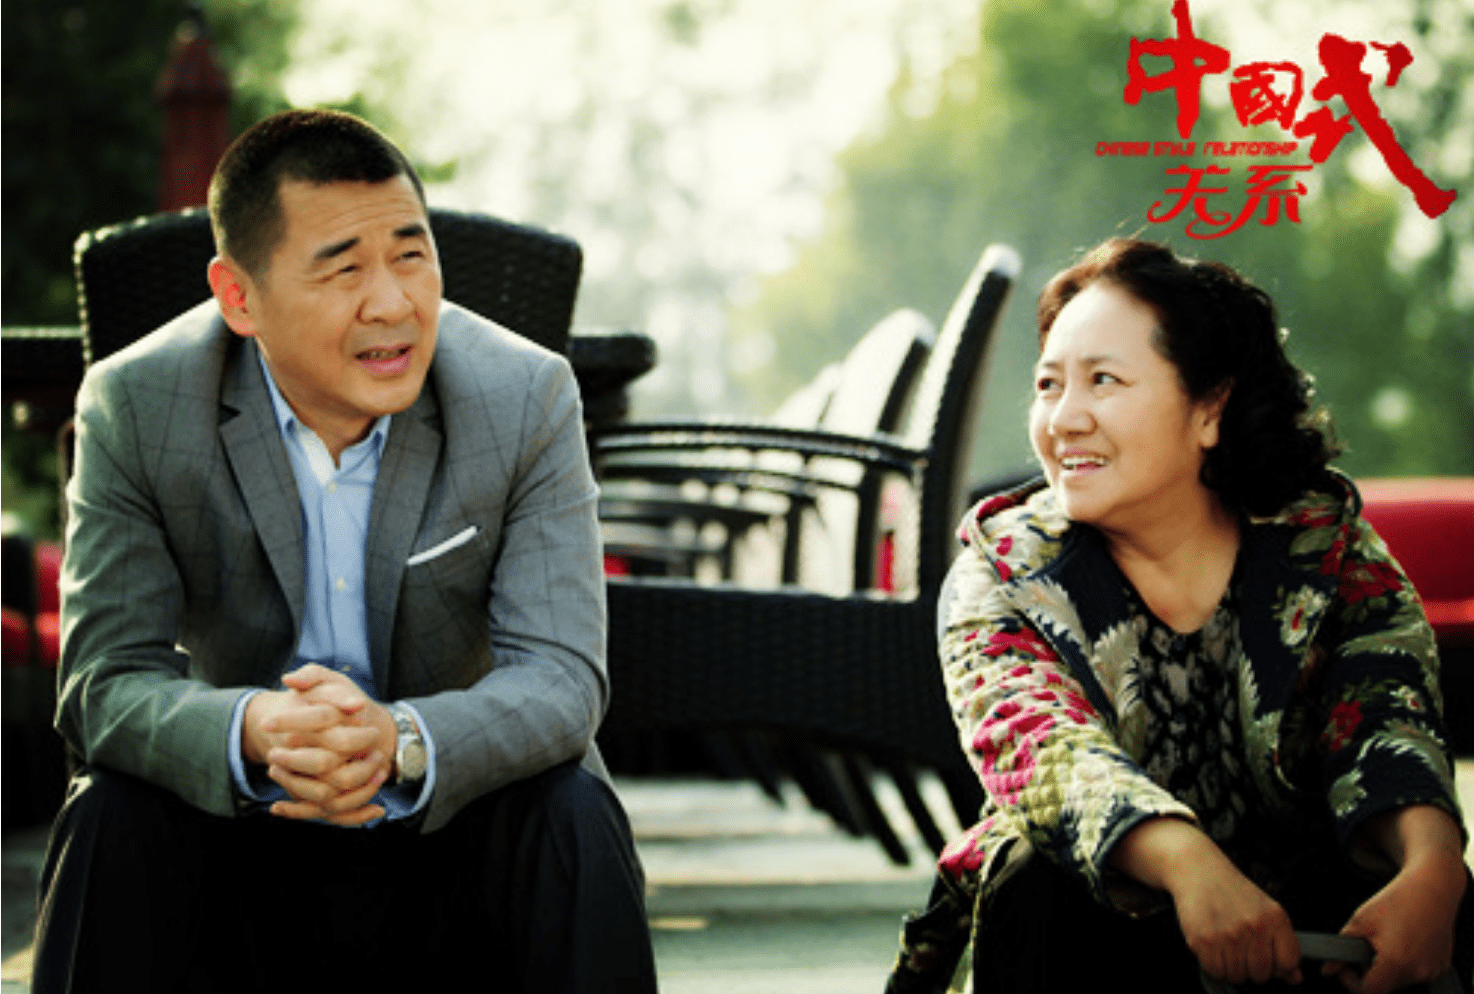 拒绝弟弟李幼斌提携,她的人生也不简单,69岁仍活跃在荧幕上